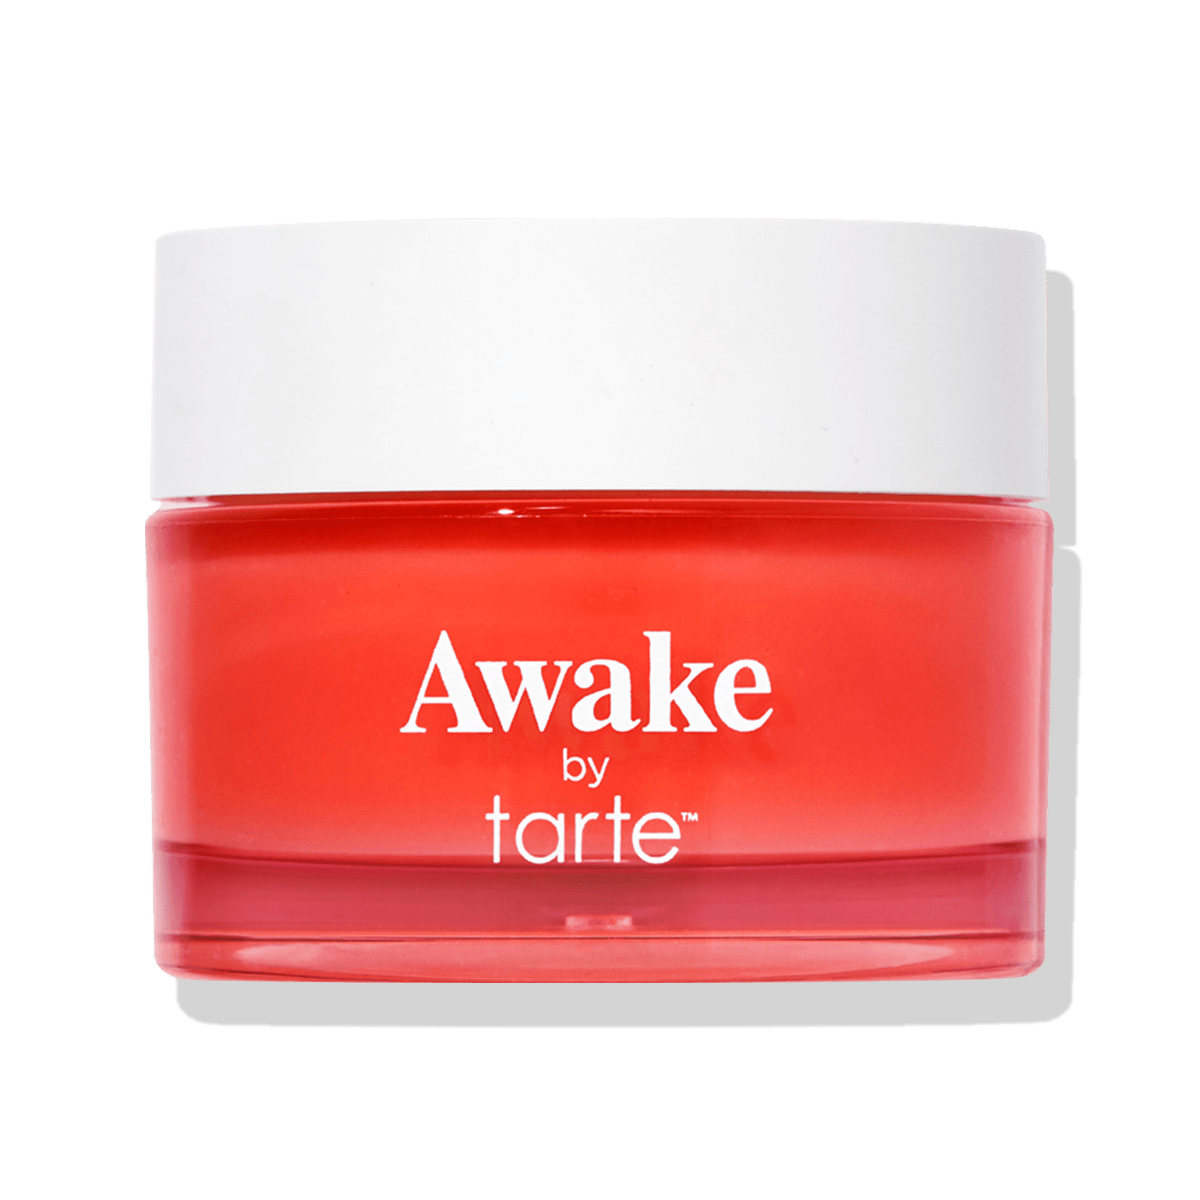 Awake by tarte クリーミー リップ リップマスク